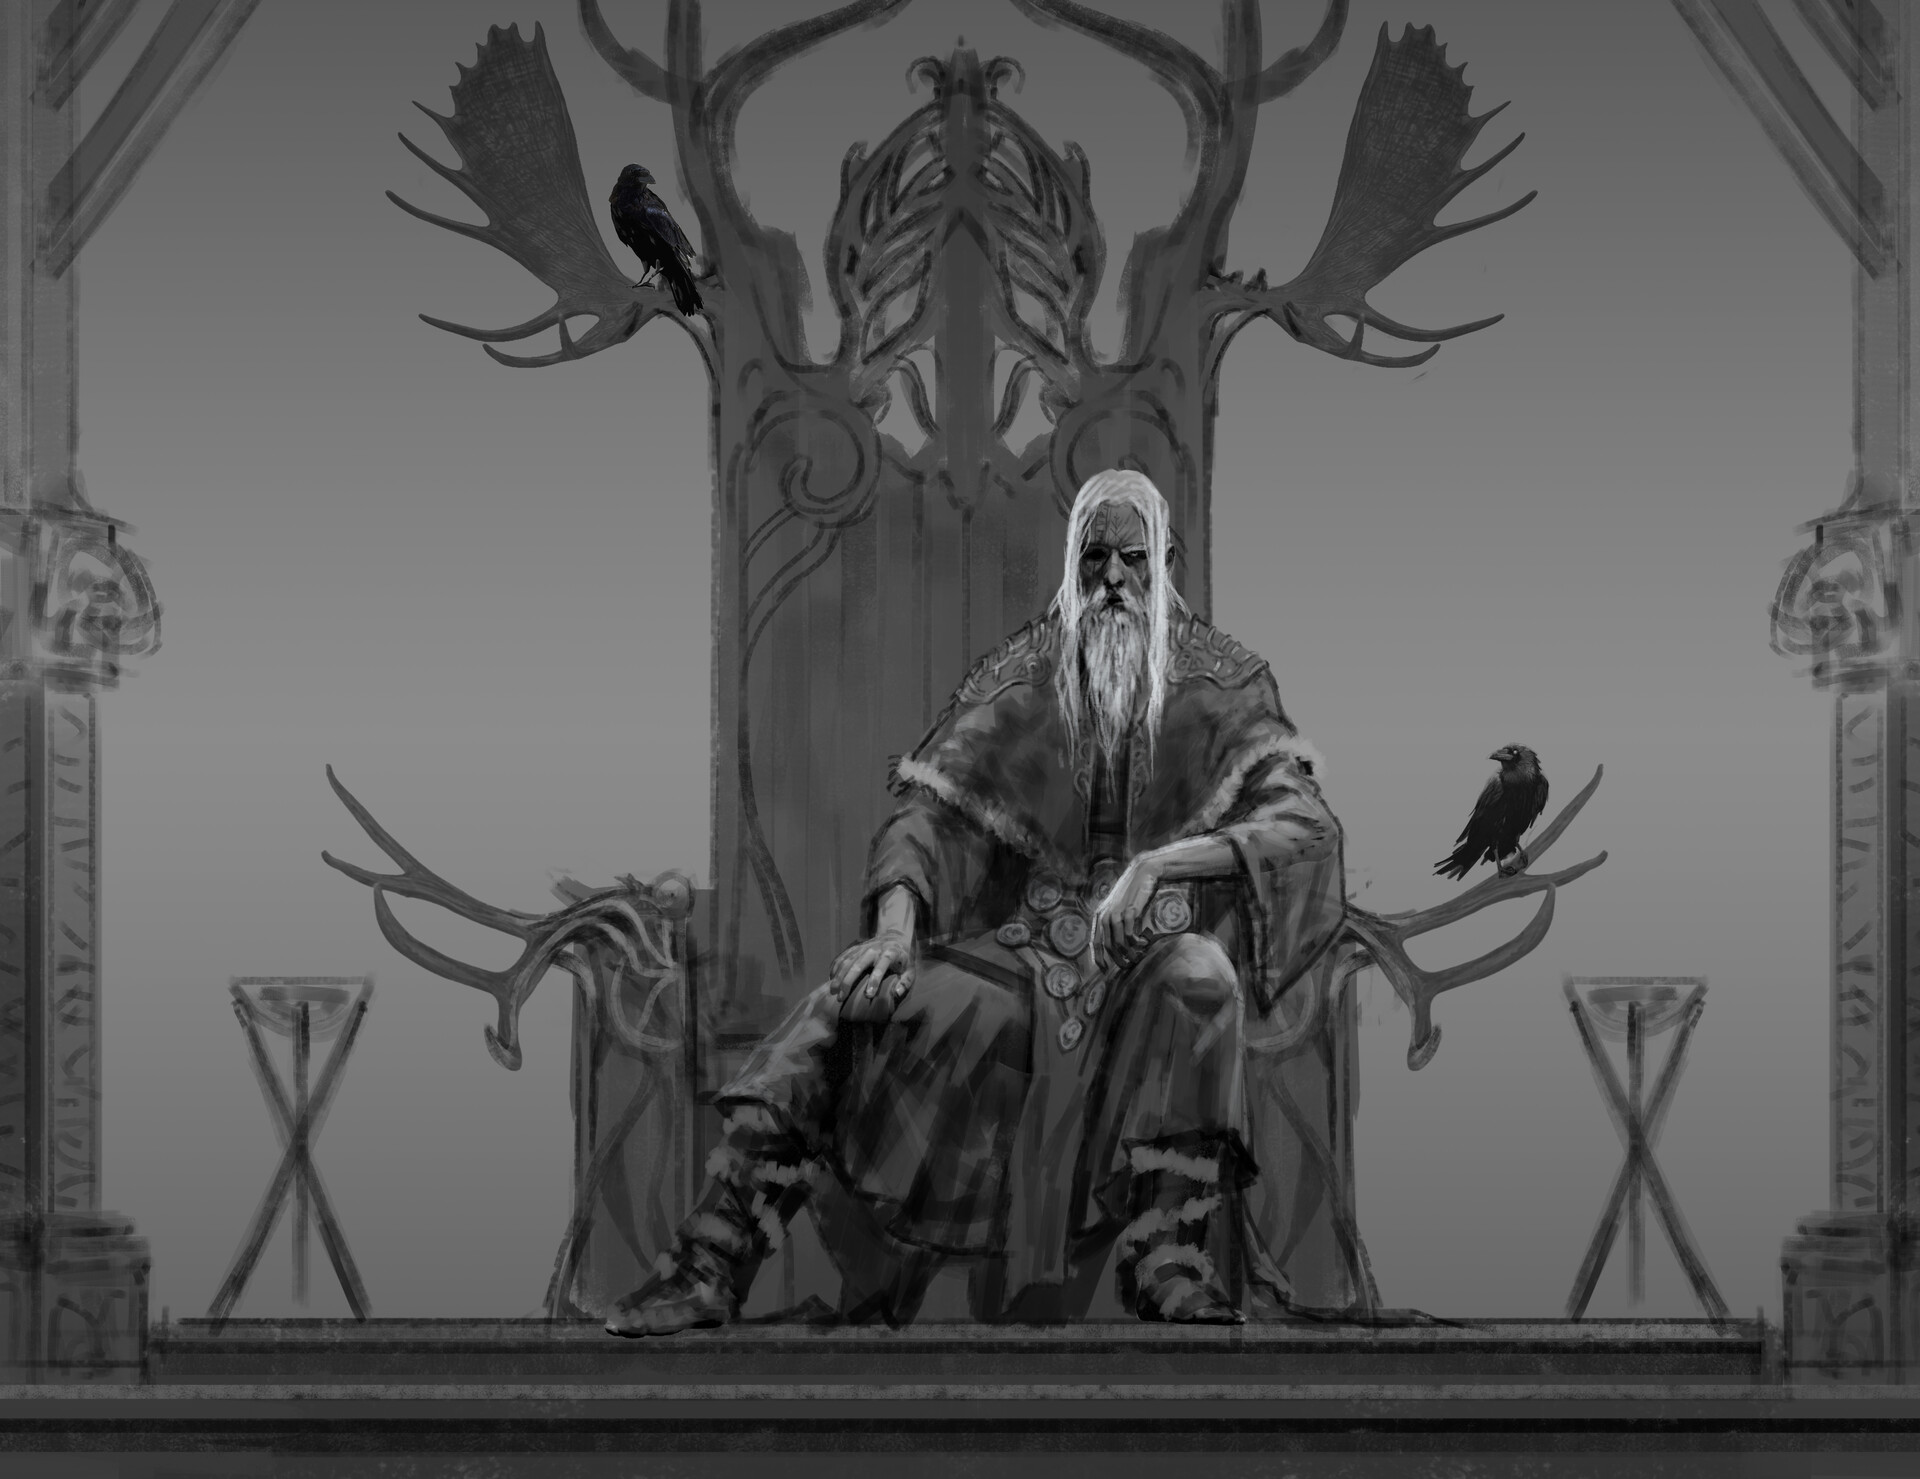 ArtStation - Odin Exploration (God of War Ragnarok)